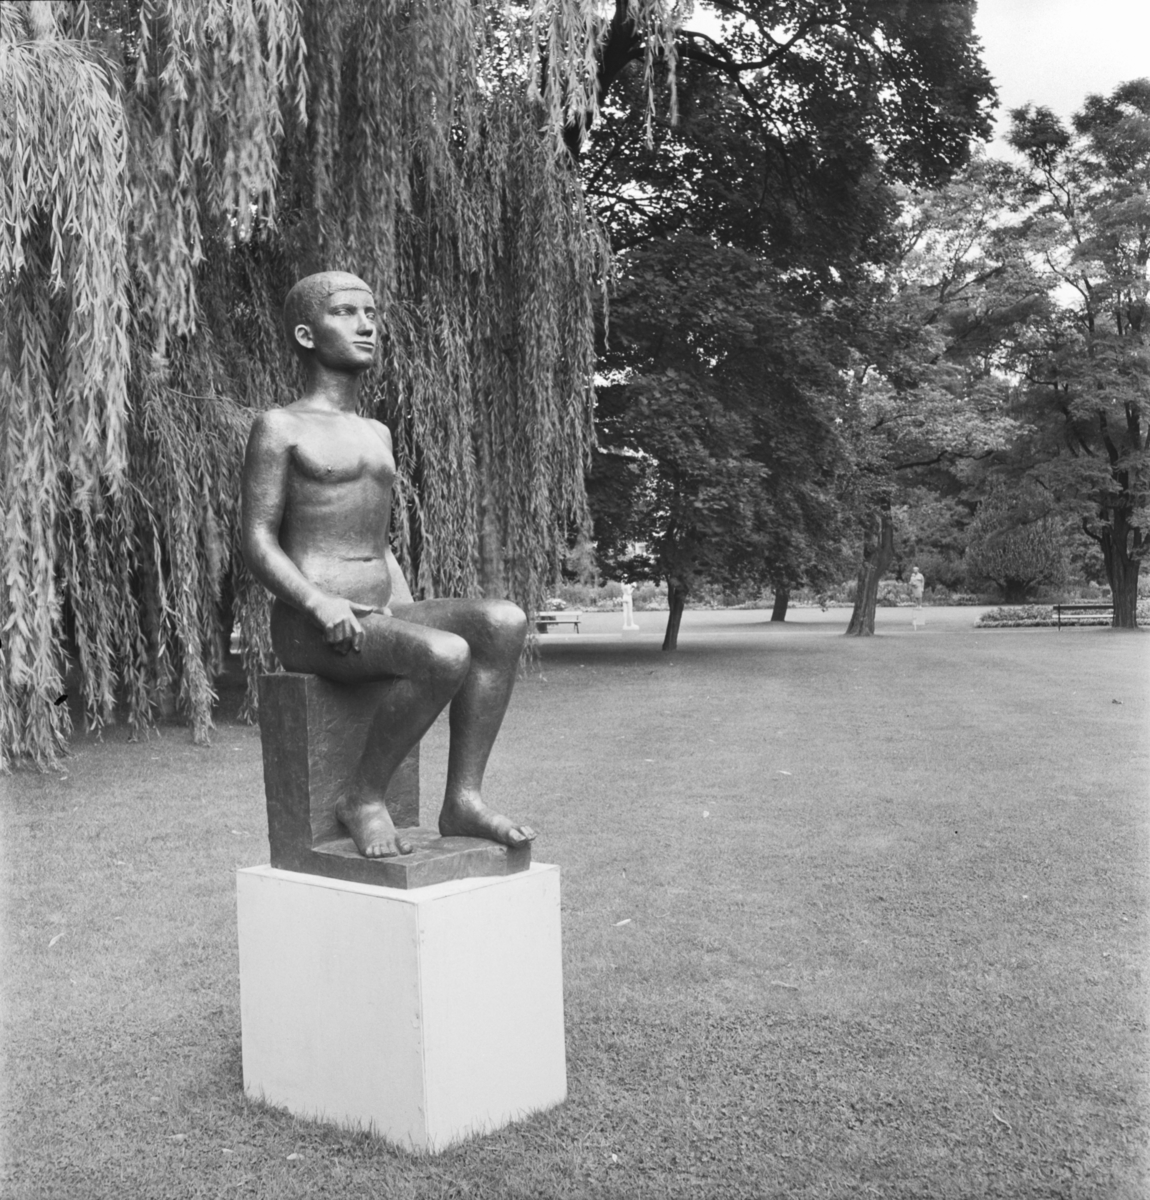 Utställningen "Skulptur i natur"
Göteborgs trädgårdsförening